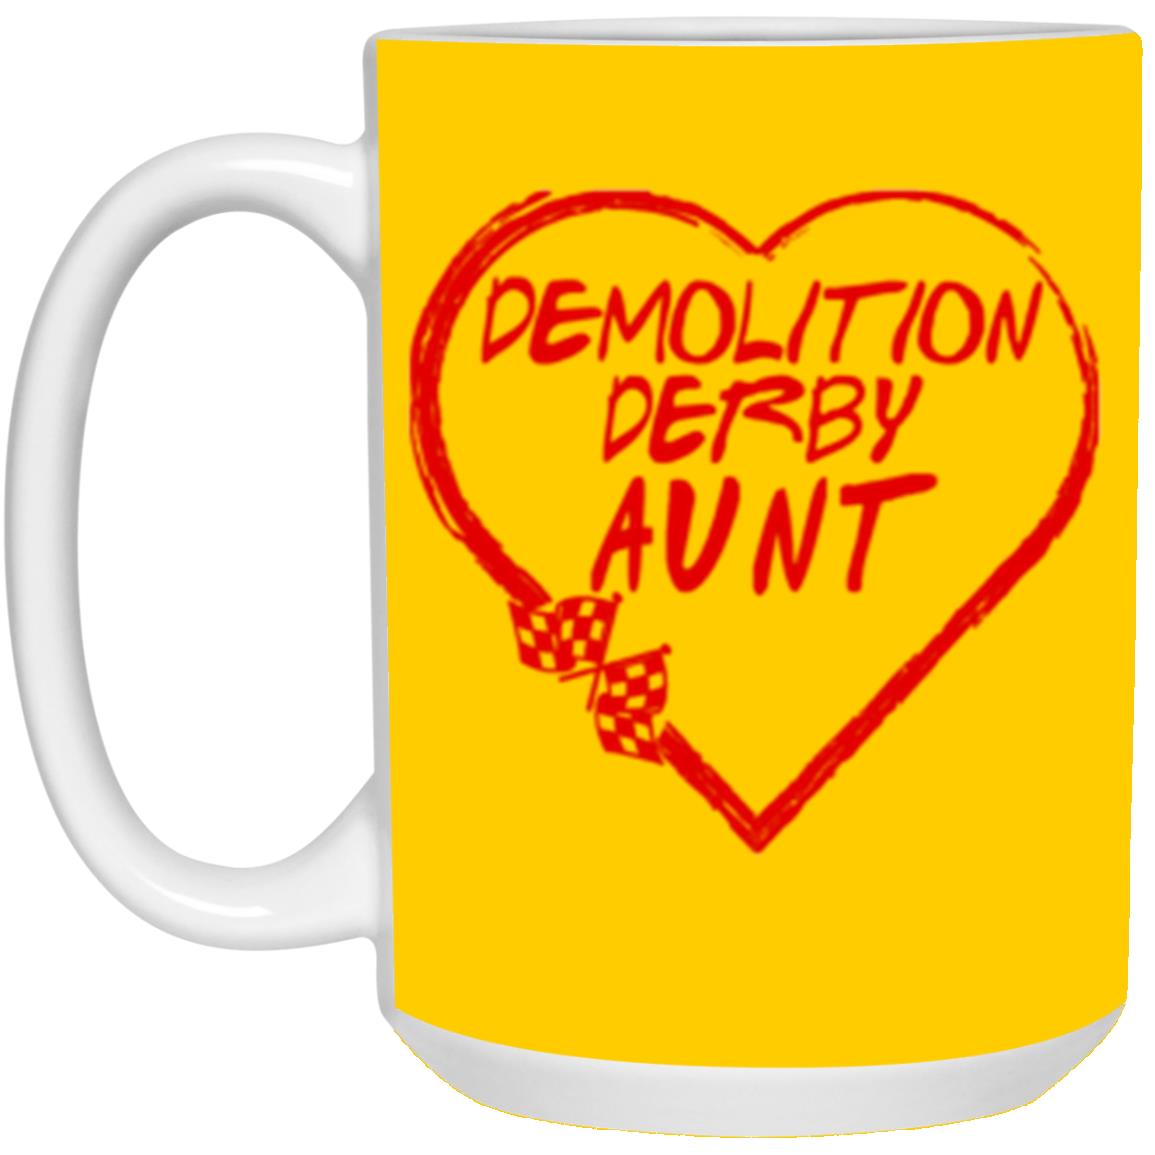 Demolition Derby Aunt Heart 15 oz. White Mug